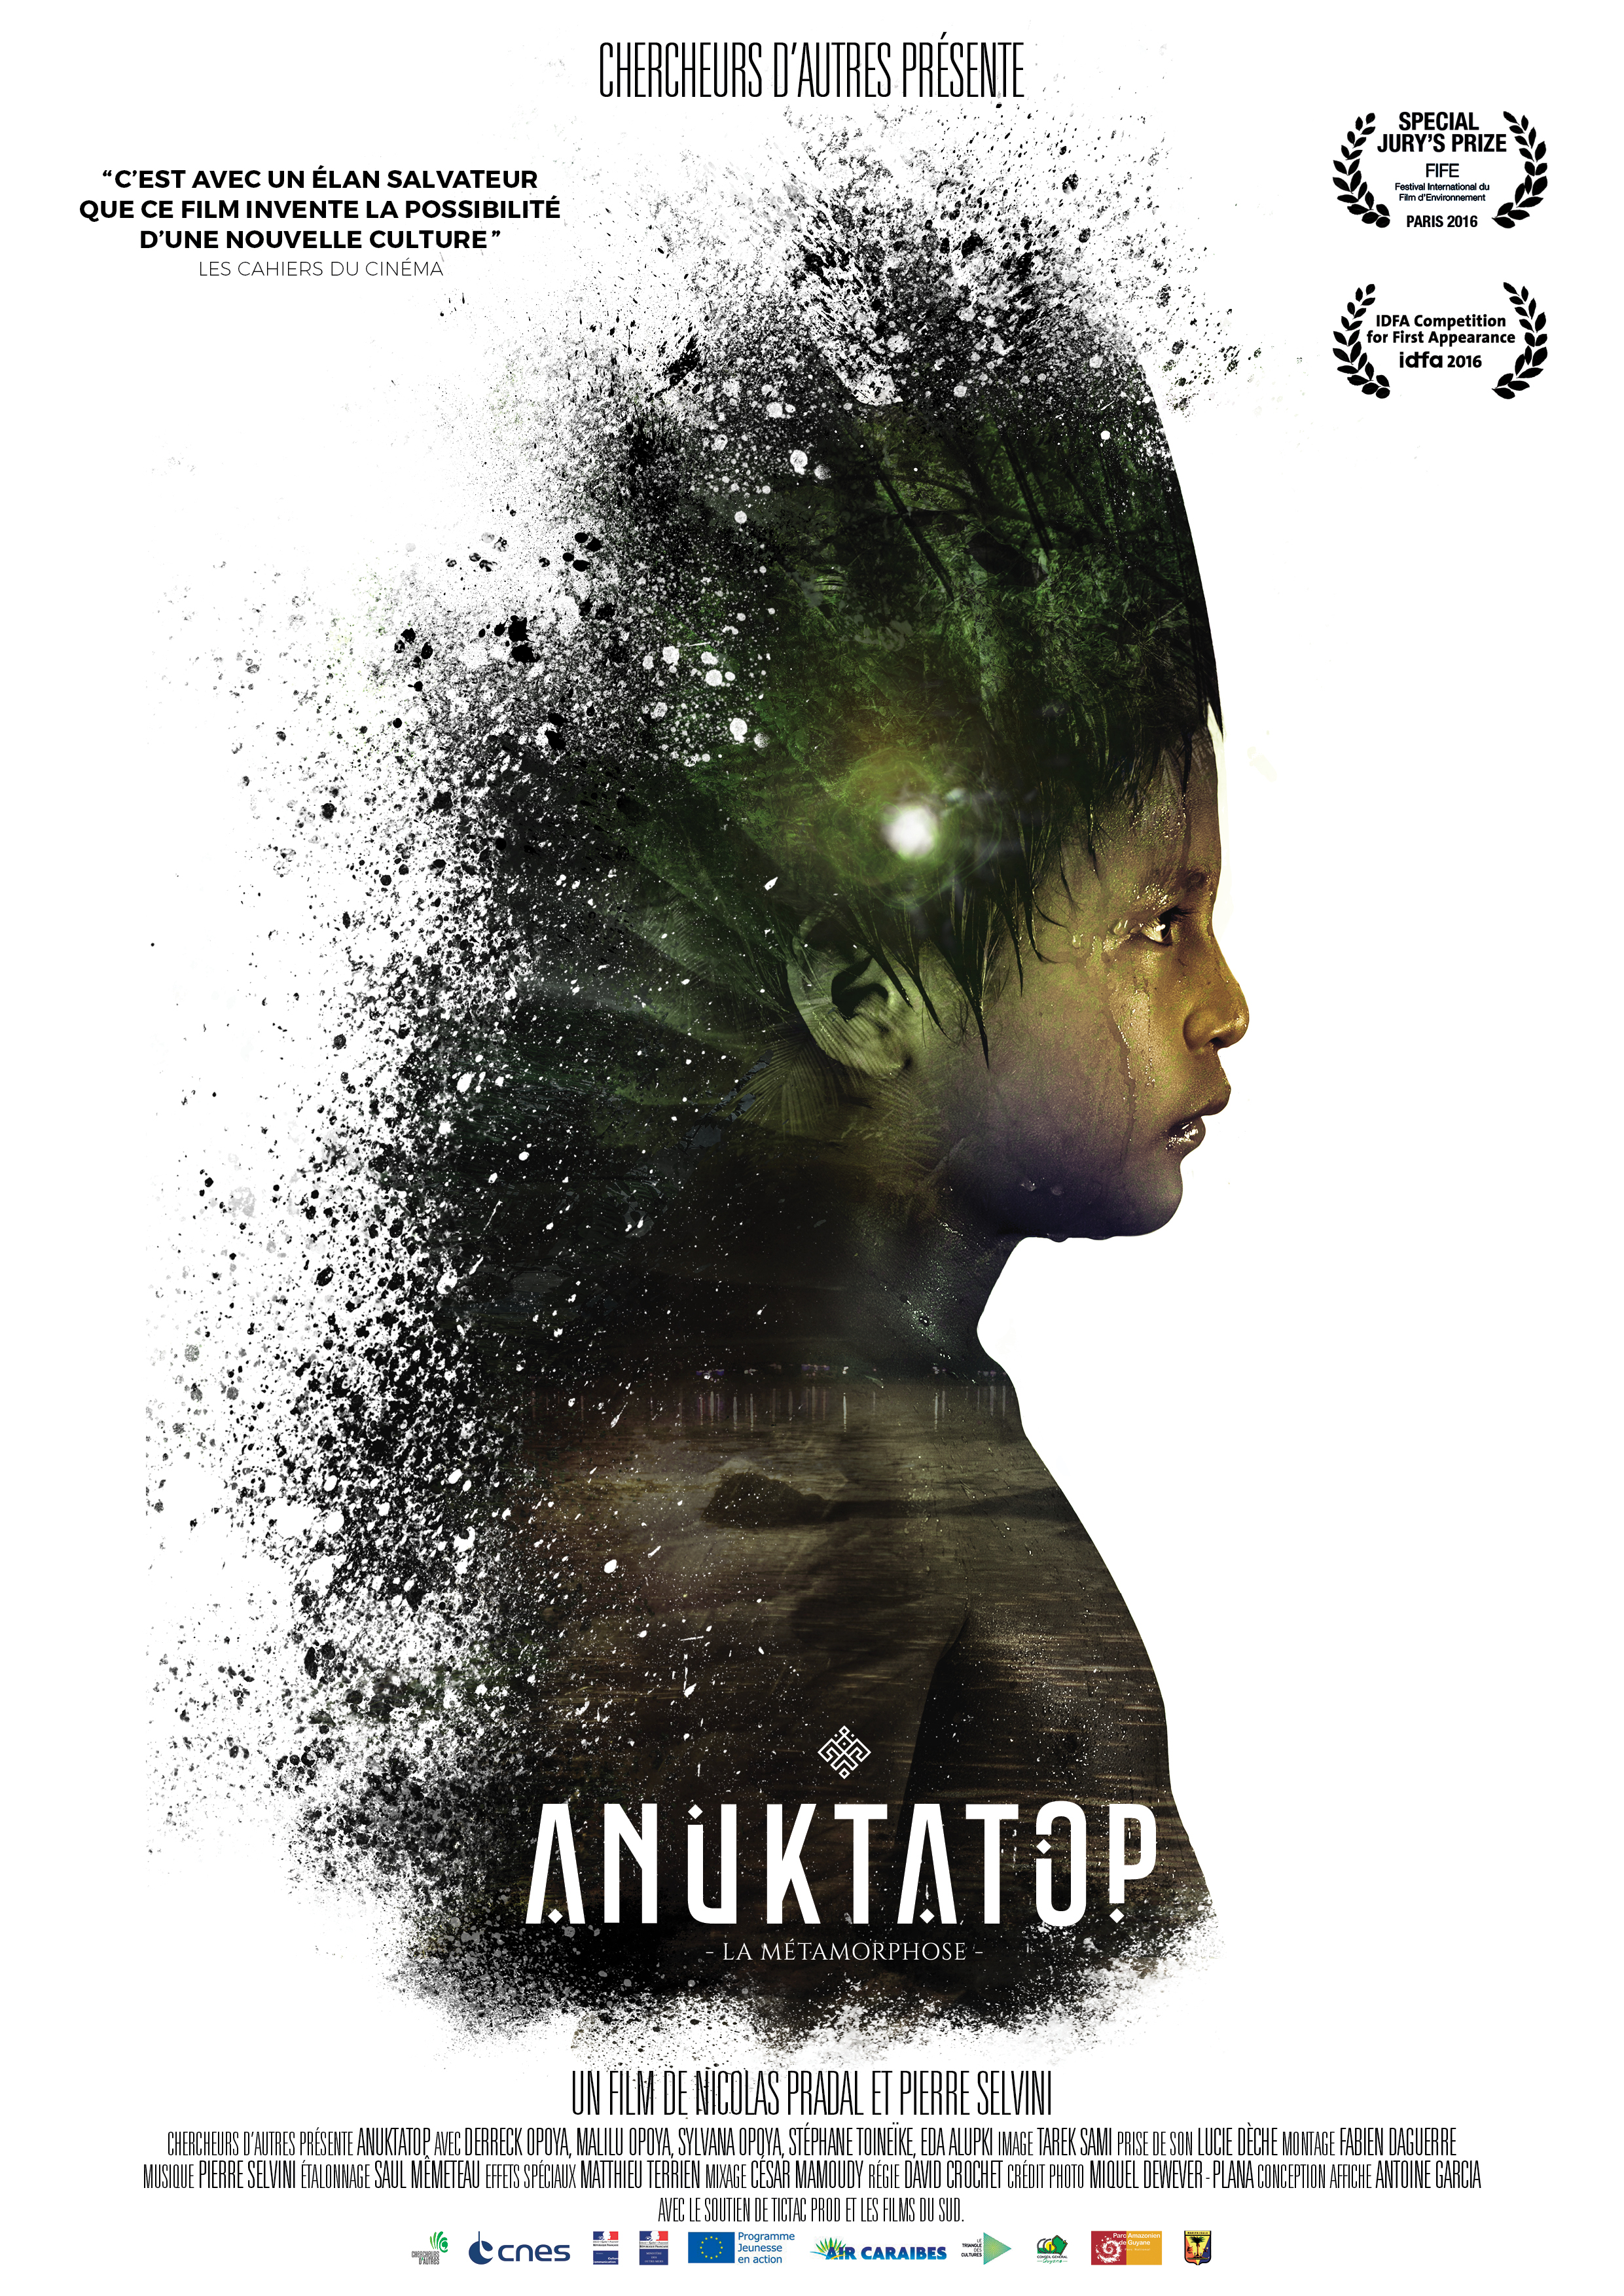 Commandez le DVD d’Anuktatop!